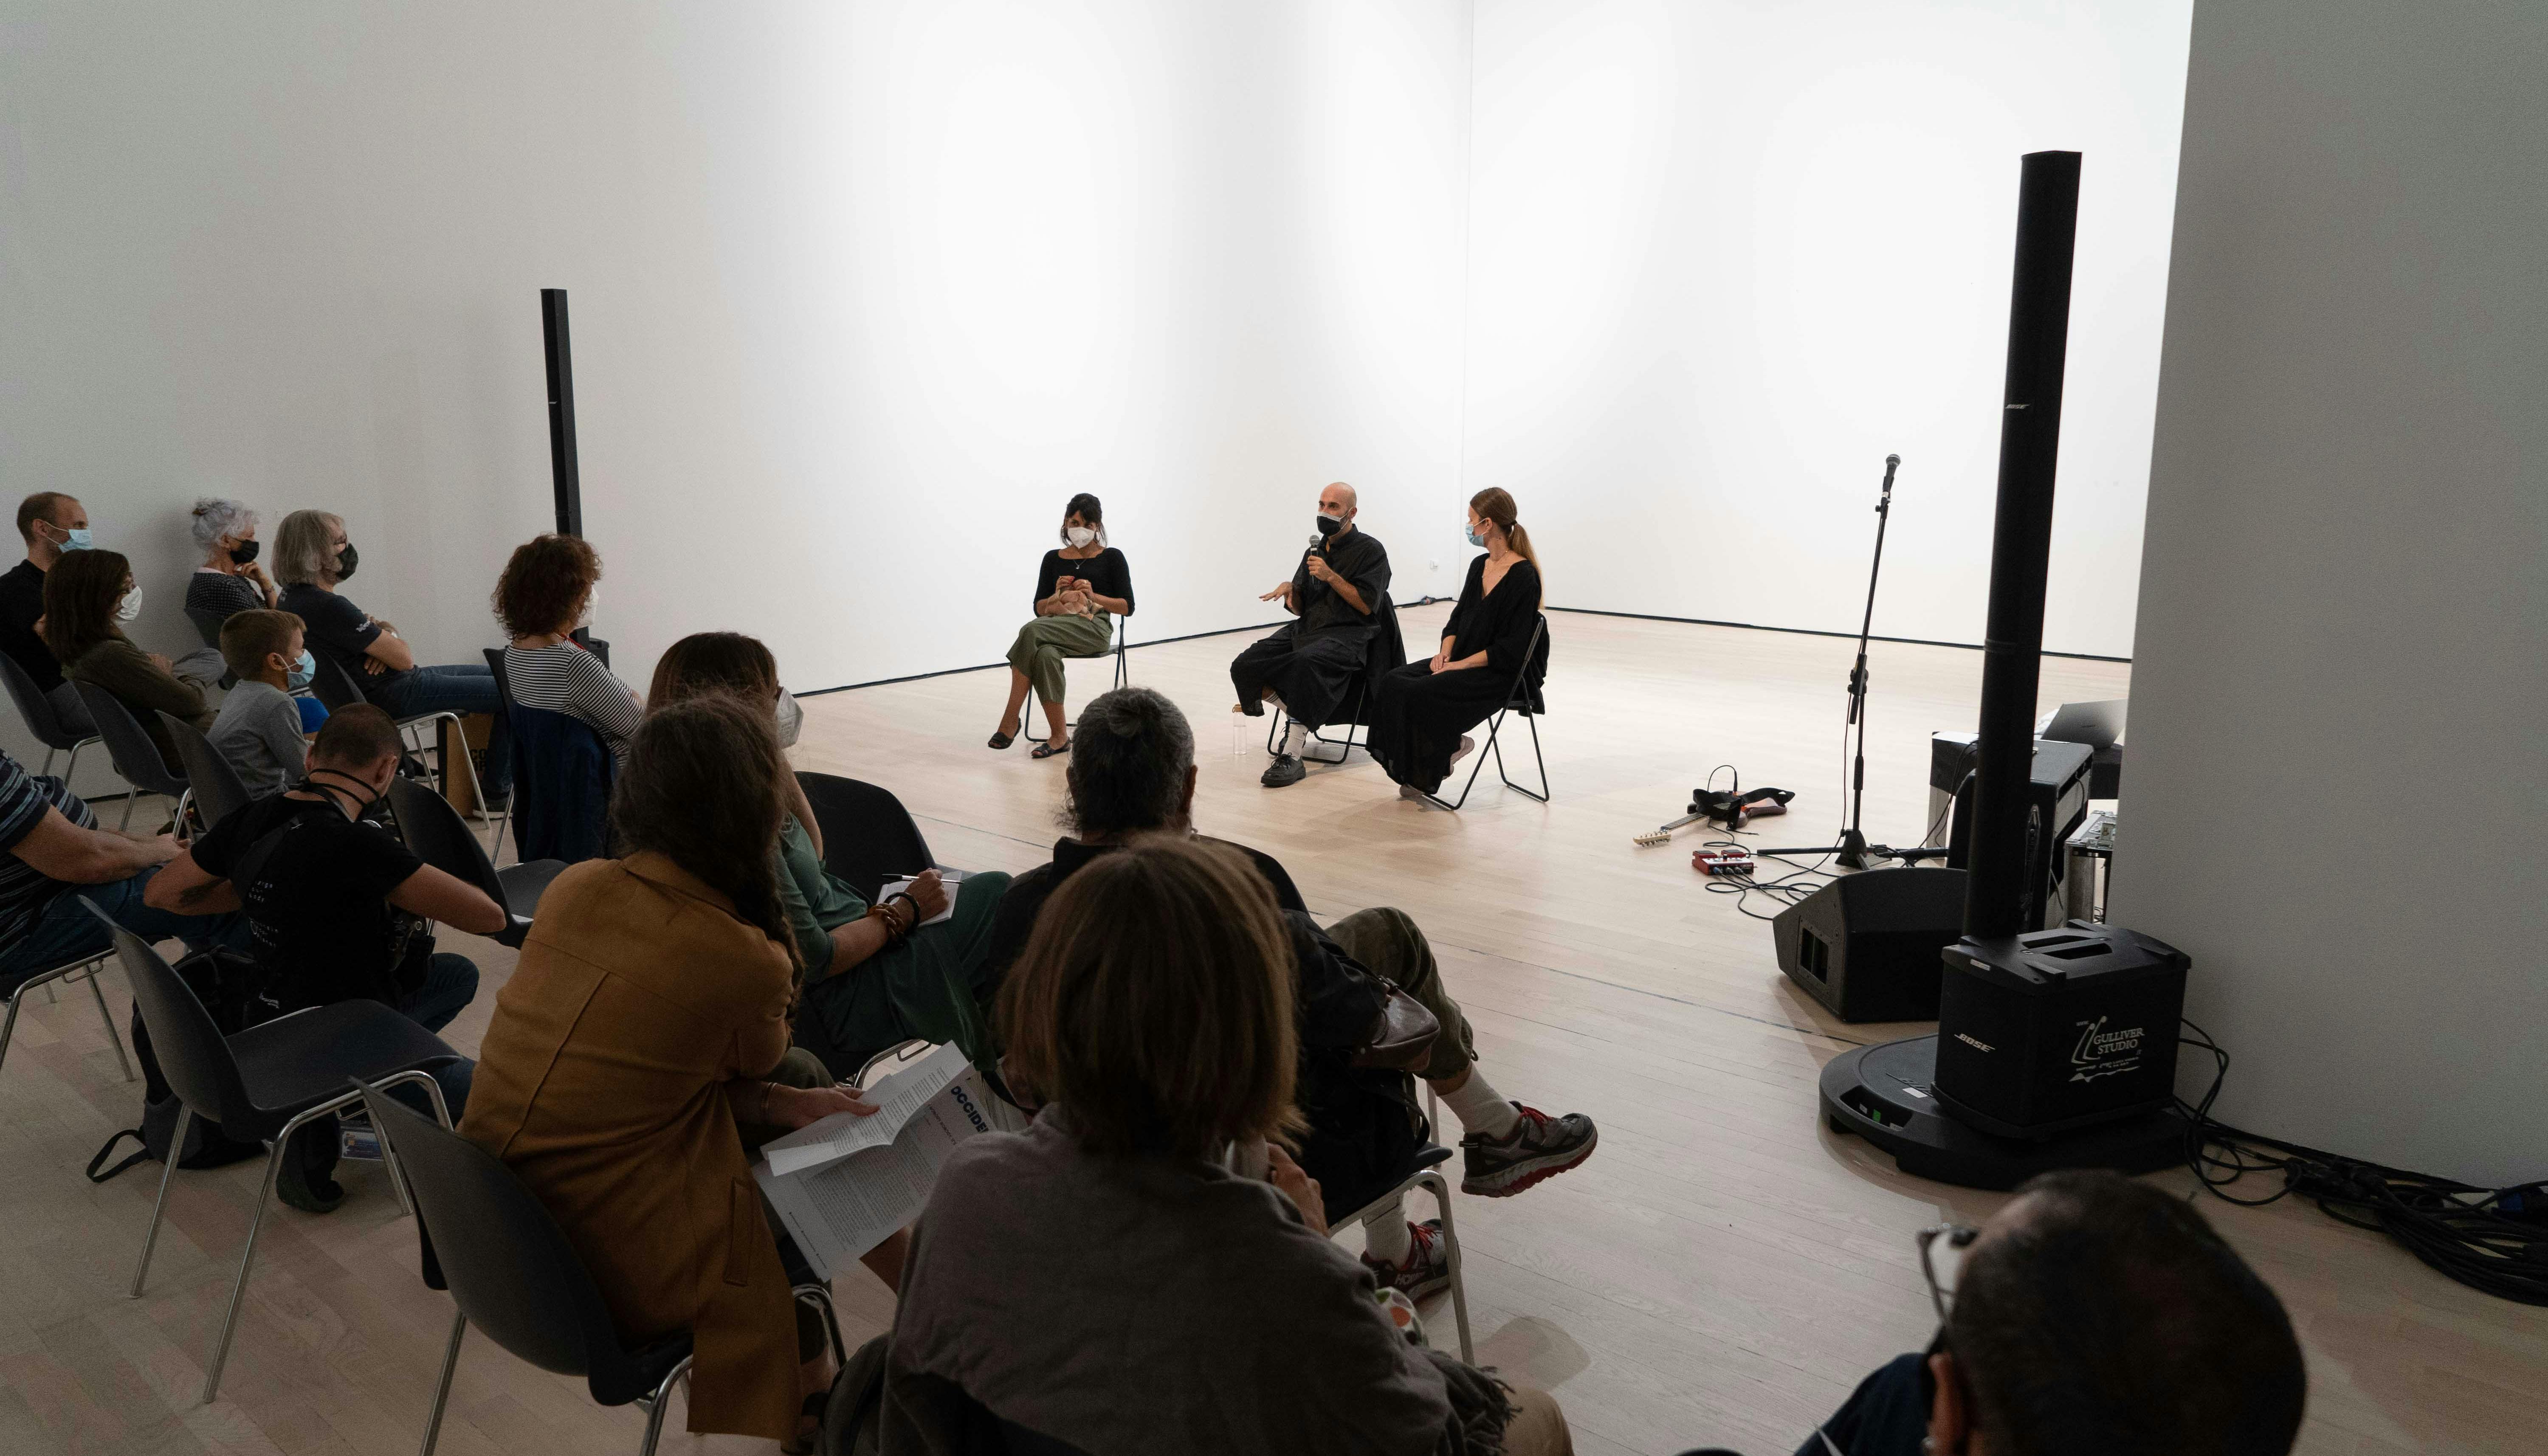 Il coreografo Daniele Ninarello, la sociologa Mariella Popolla e la drammaturga Gaia Clorilde Chernetich seduti al centro dello spazio performativo, parlano con il pubblico di fronte a loro.